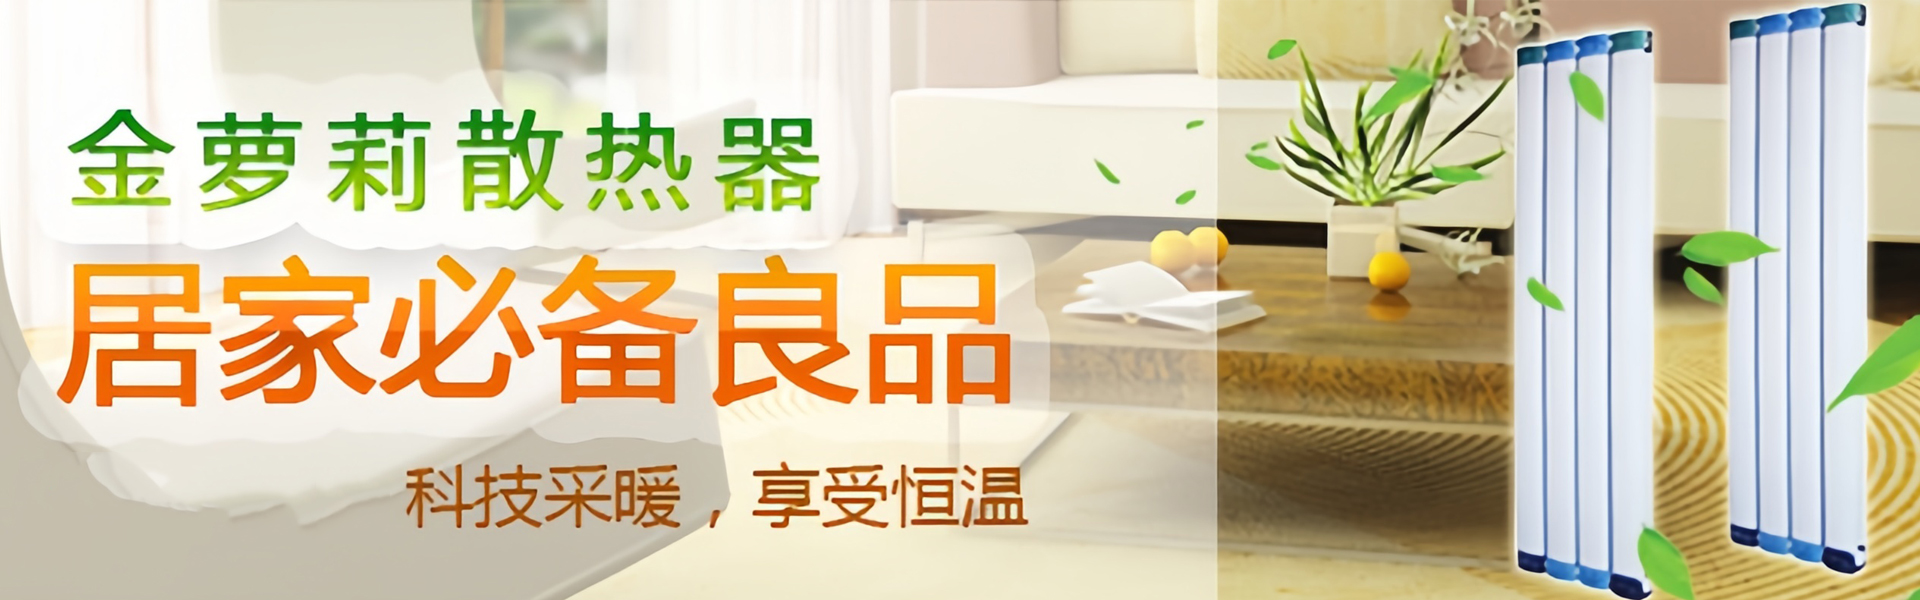 金萝莉散热器|天津暖气片厂家|天津暖气片品牌